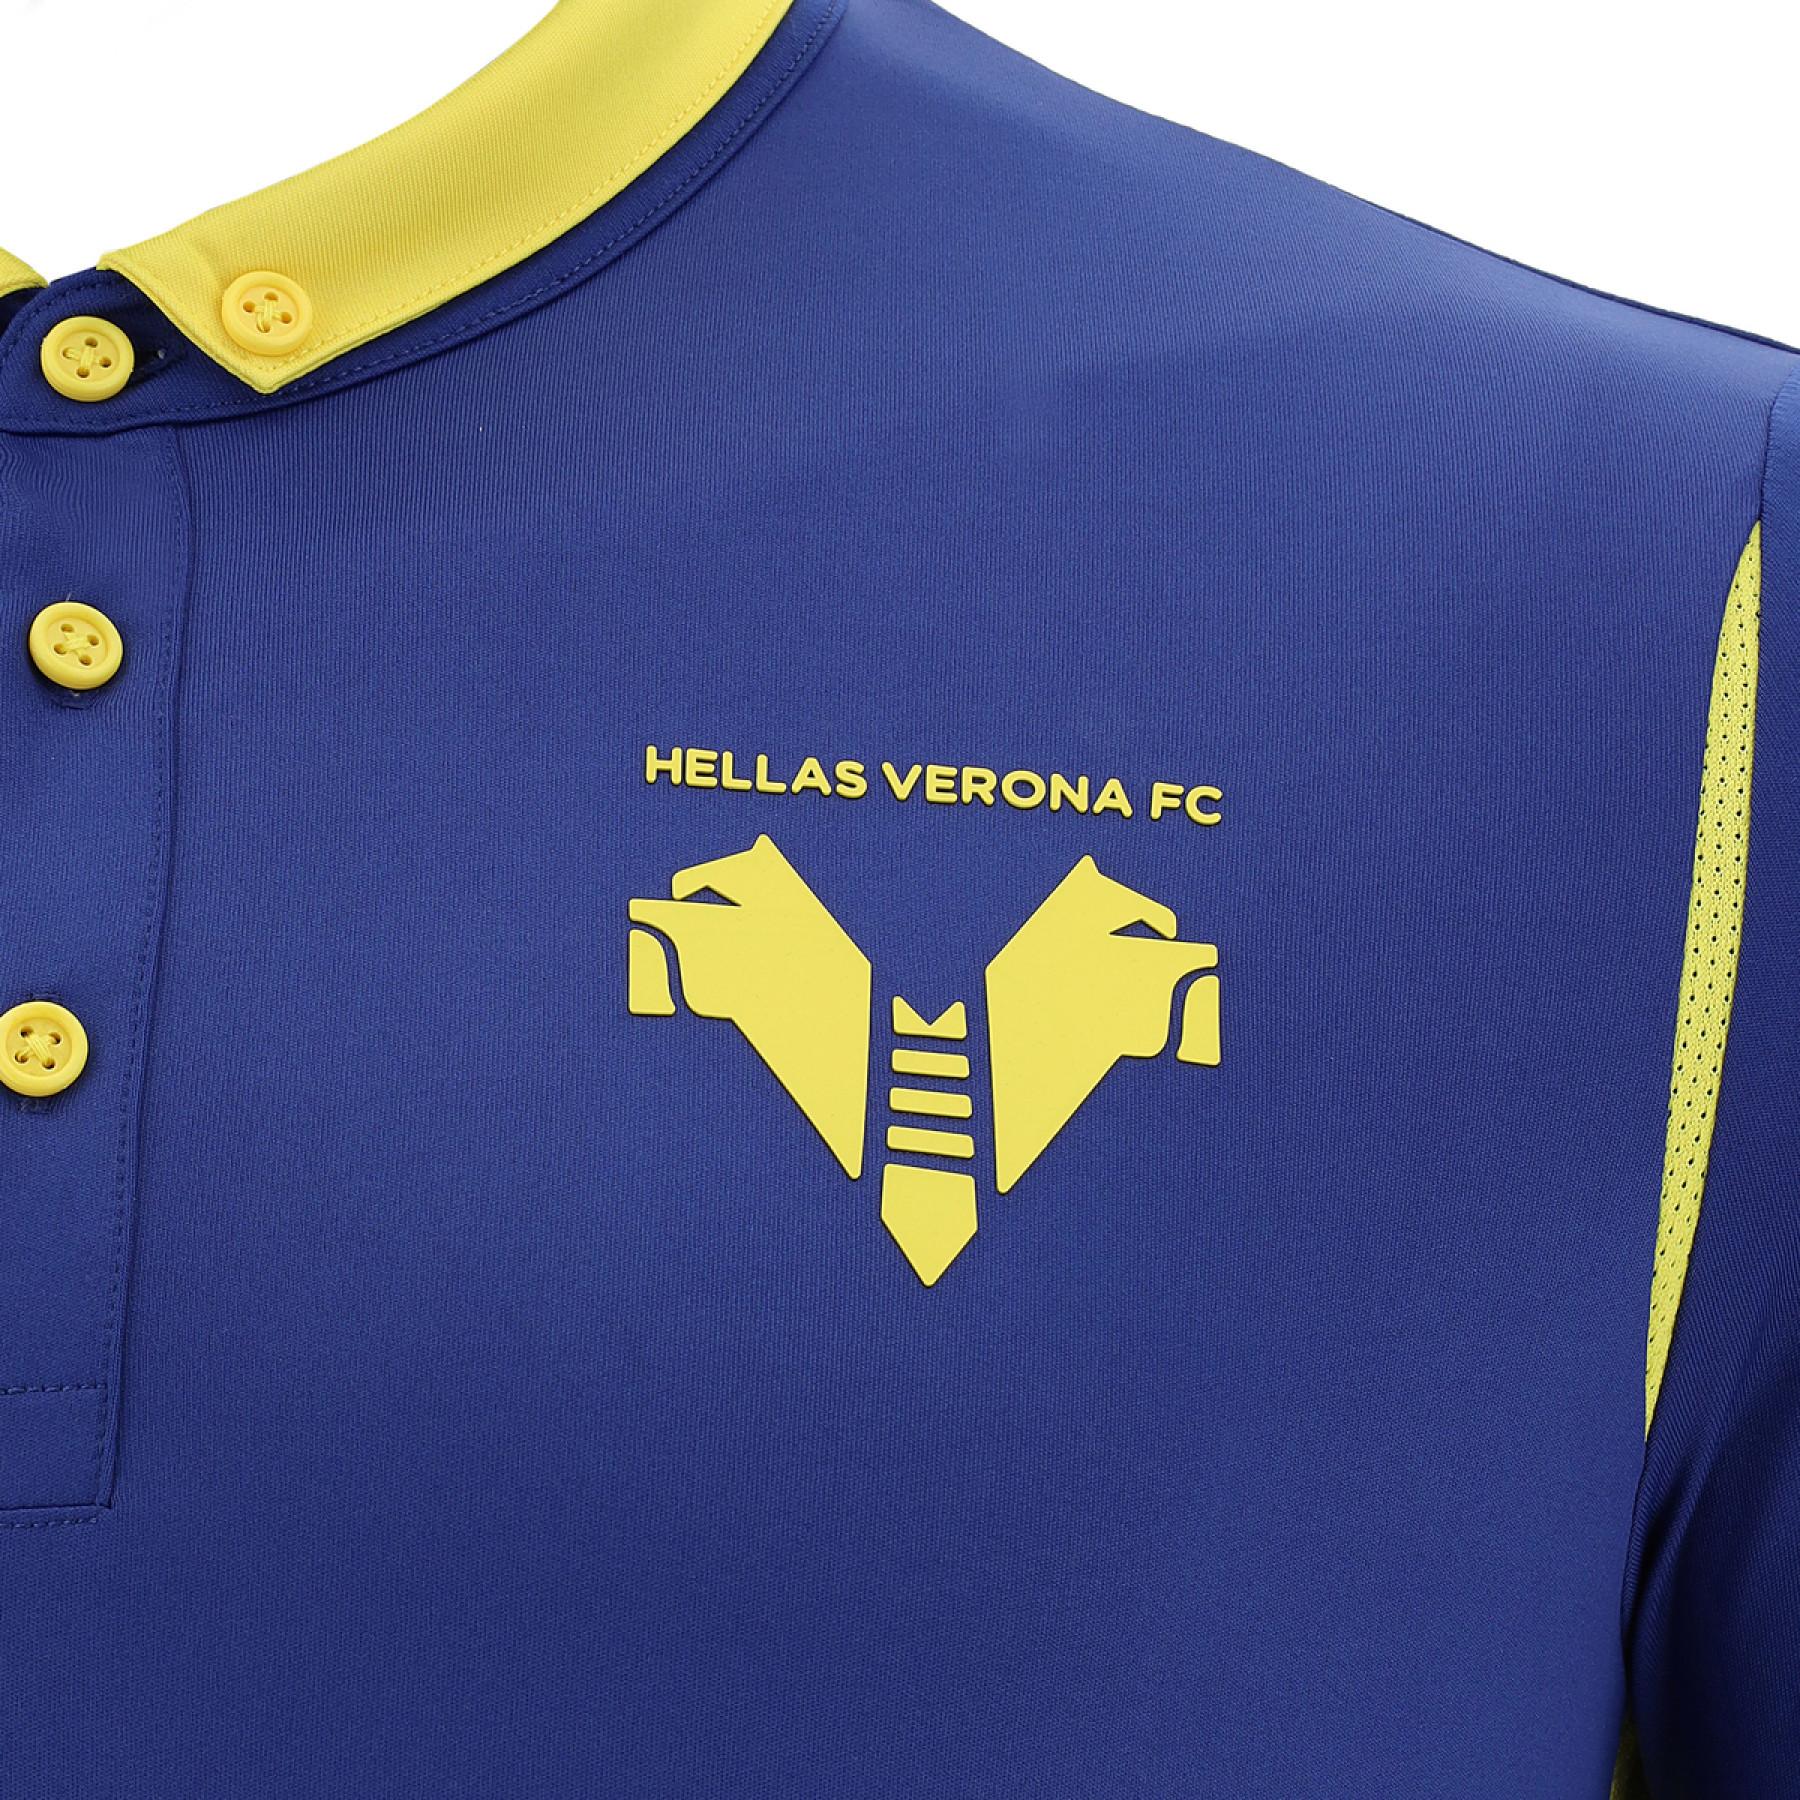 Camiseta primera equipación Hellas Vérone fc 2020/21